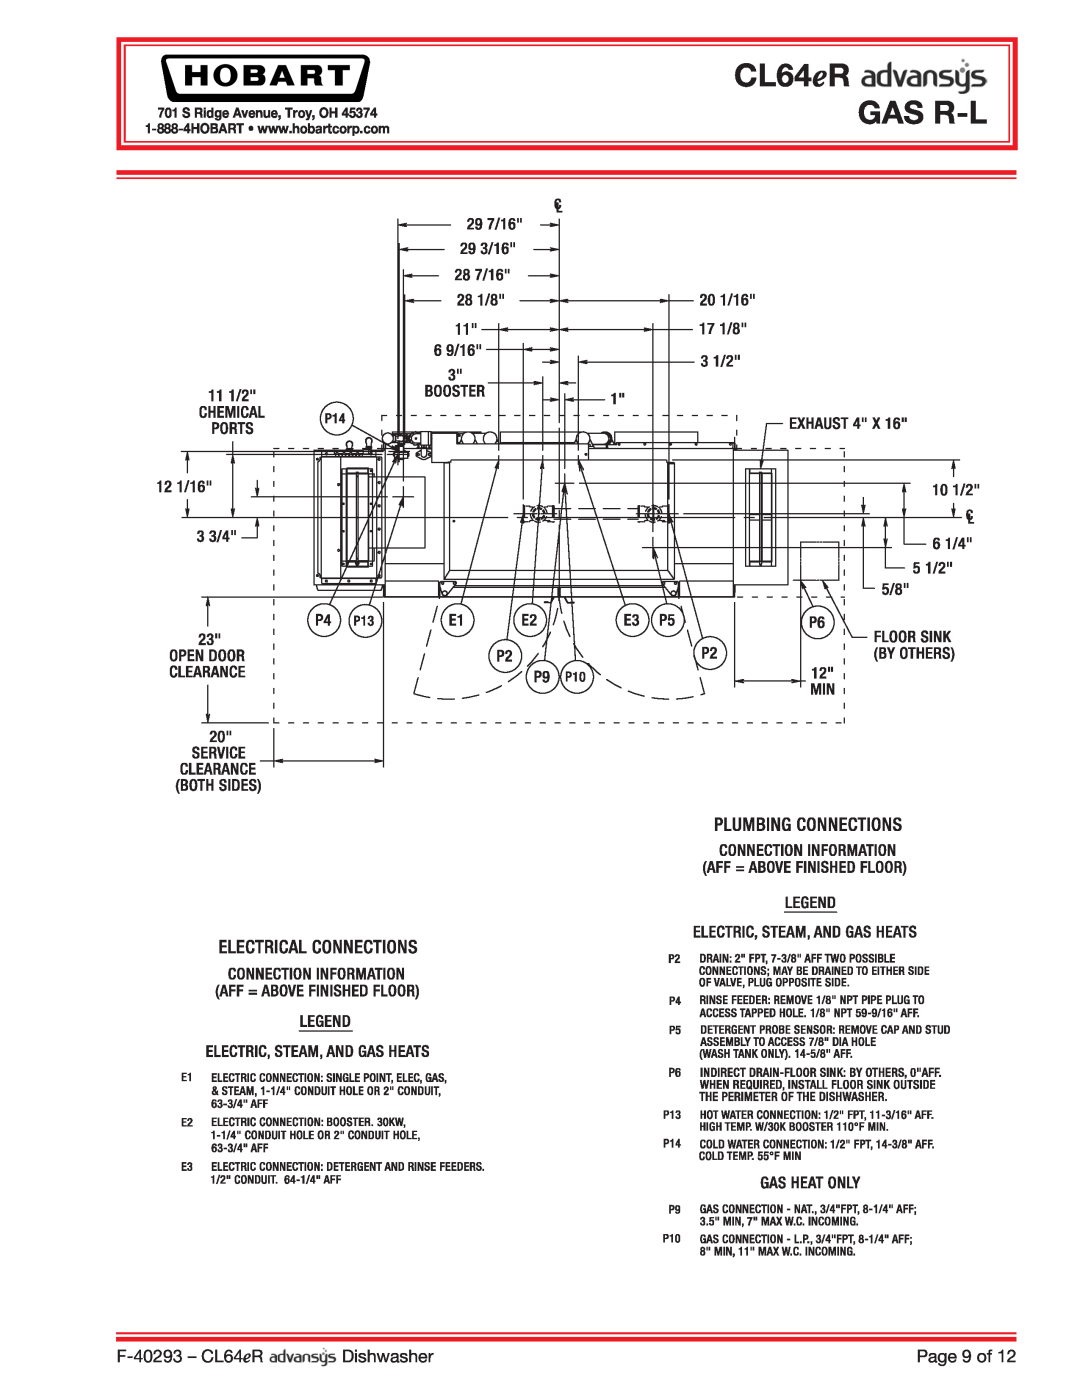 Hobart CL64ER dimensions CL64eR GAS R-L, F-40293 - CL64eR, Dishwasher, Page 9 of, S Ridge Avenue, Troy, OH 